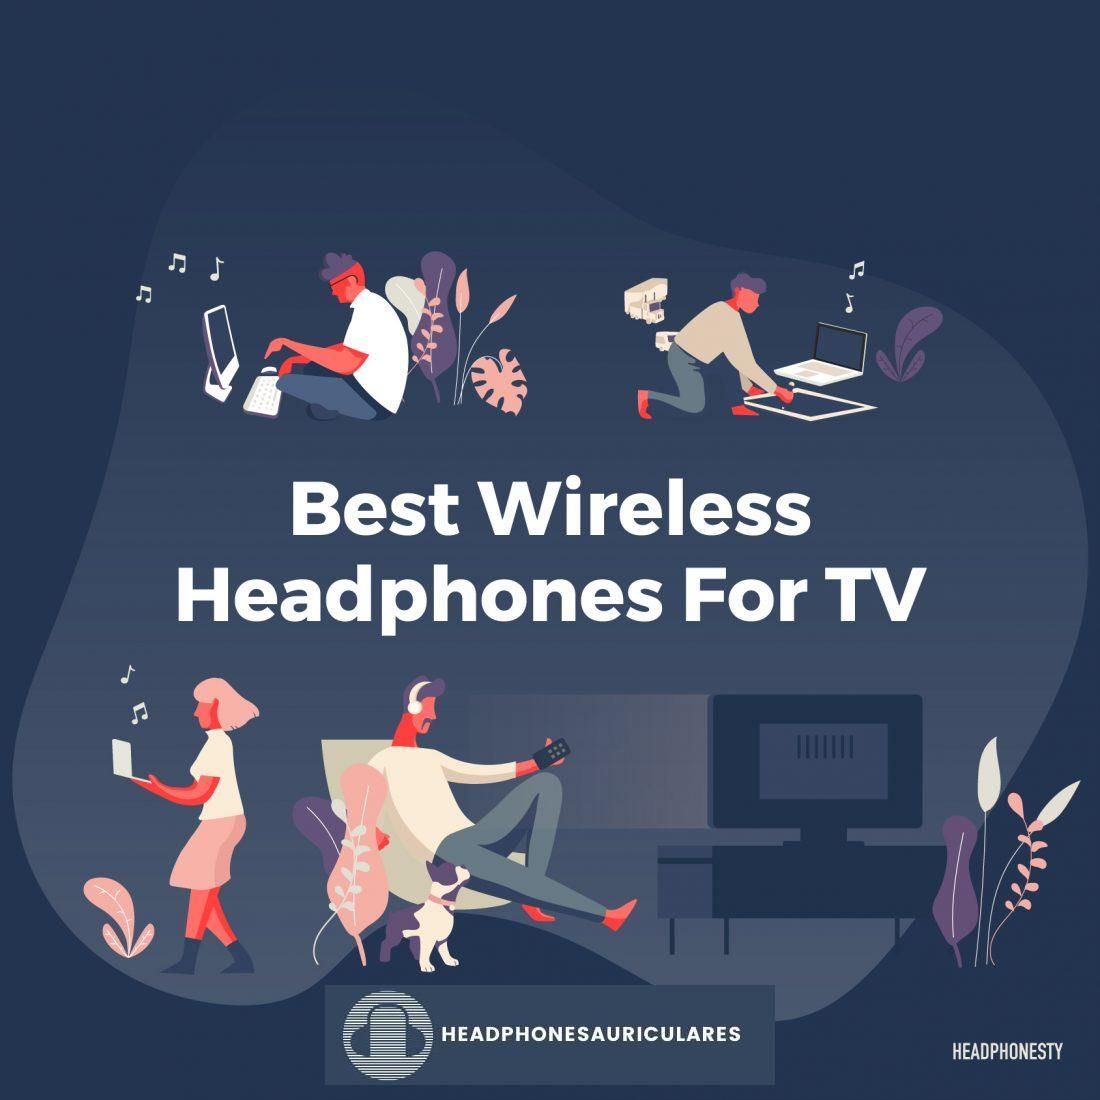 Los mejores auriculares inalámbricos para TV